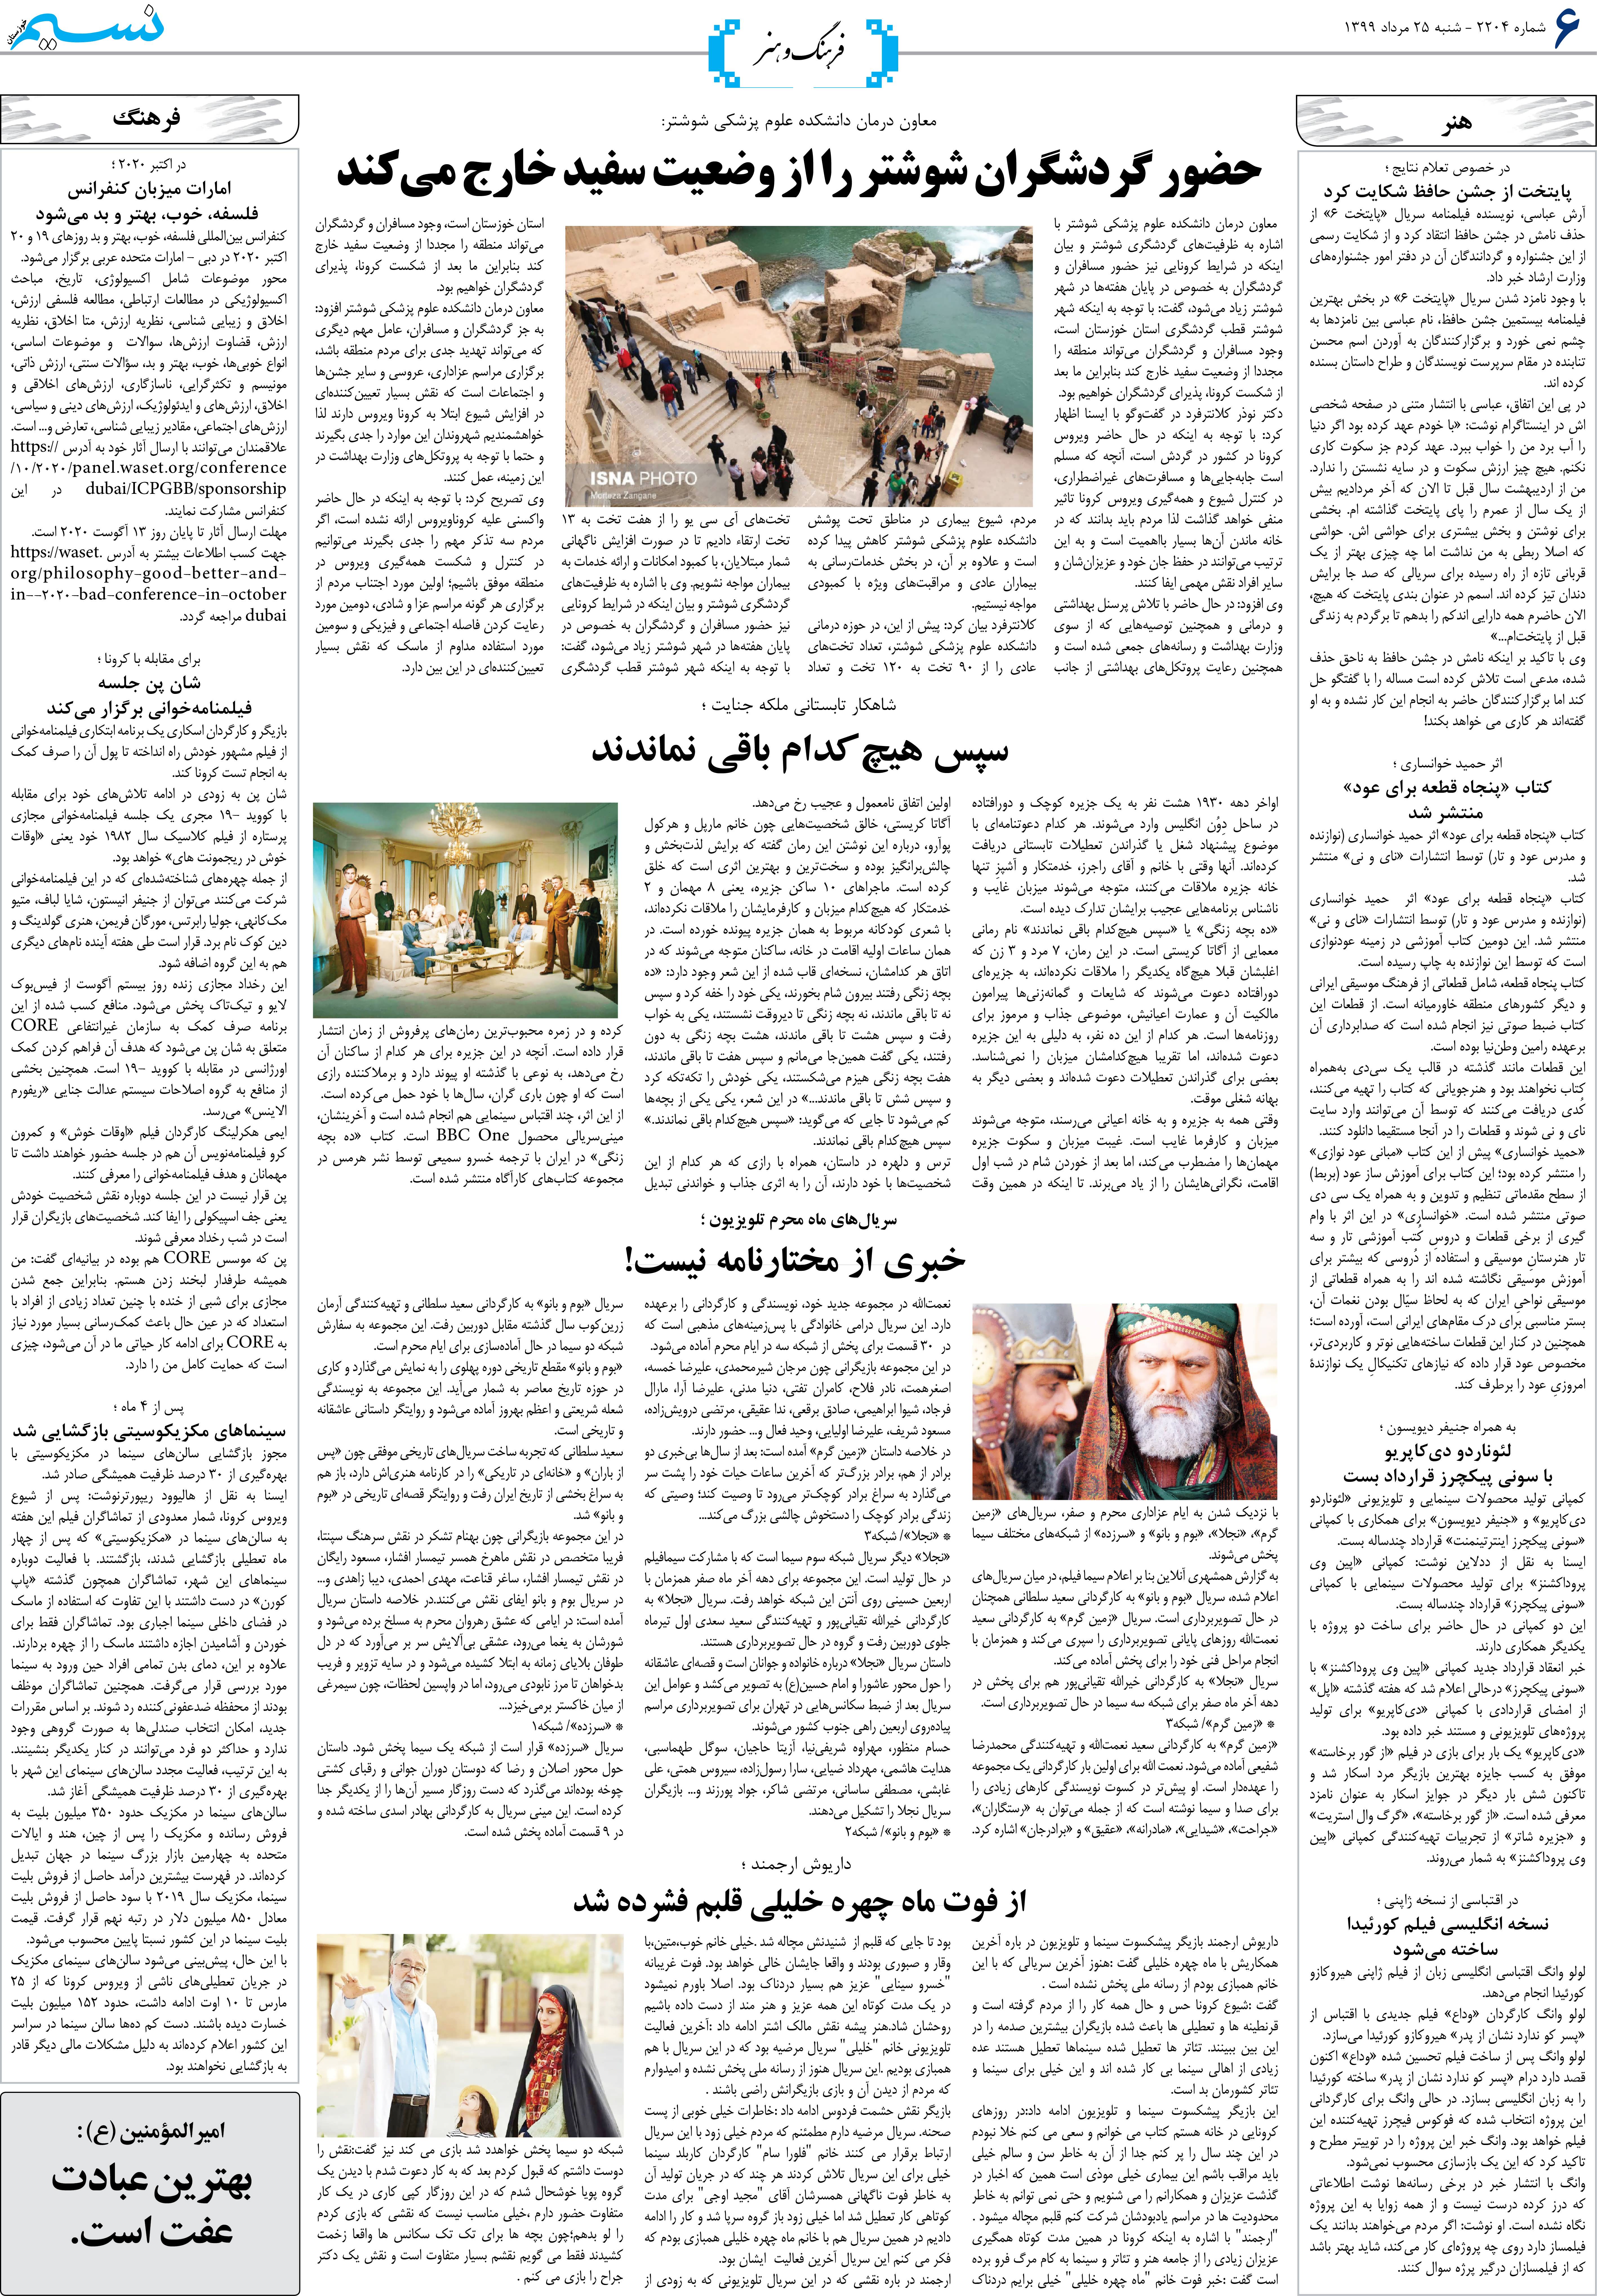 صفحه فرهنگ و هنر روزنامه نسیم شماره 2204